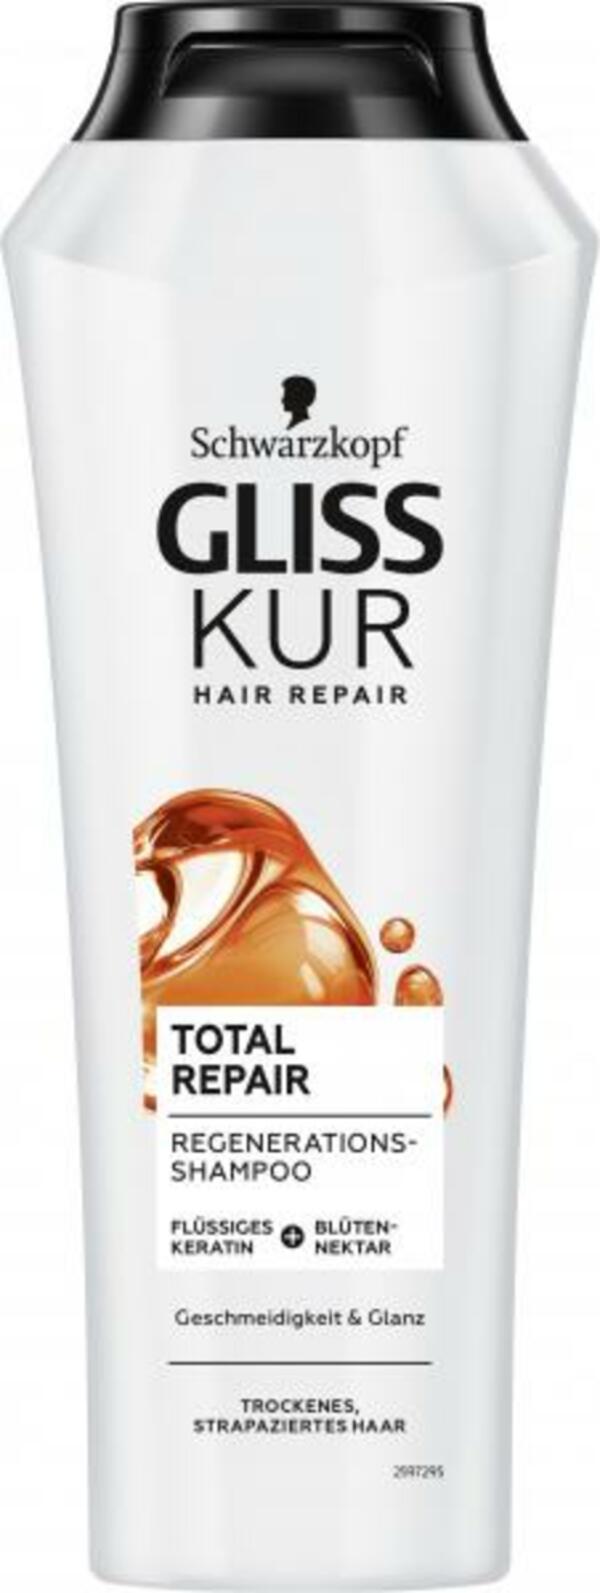 Bild 1 von Schwarzkopf Gliss Kur Shampoo Total Repair